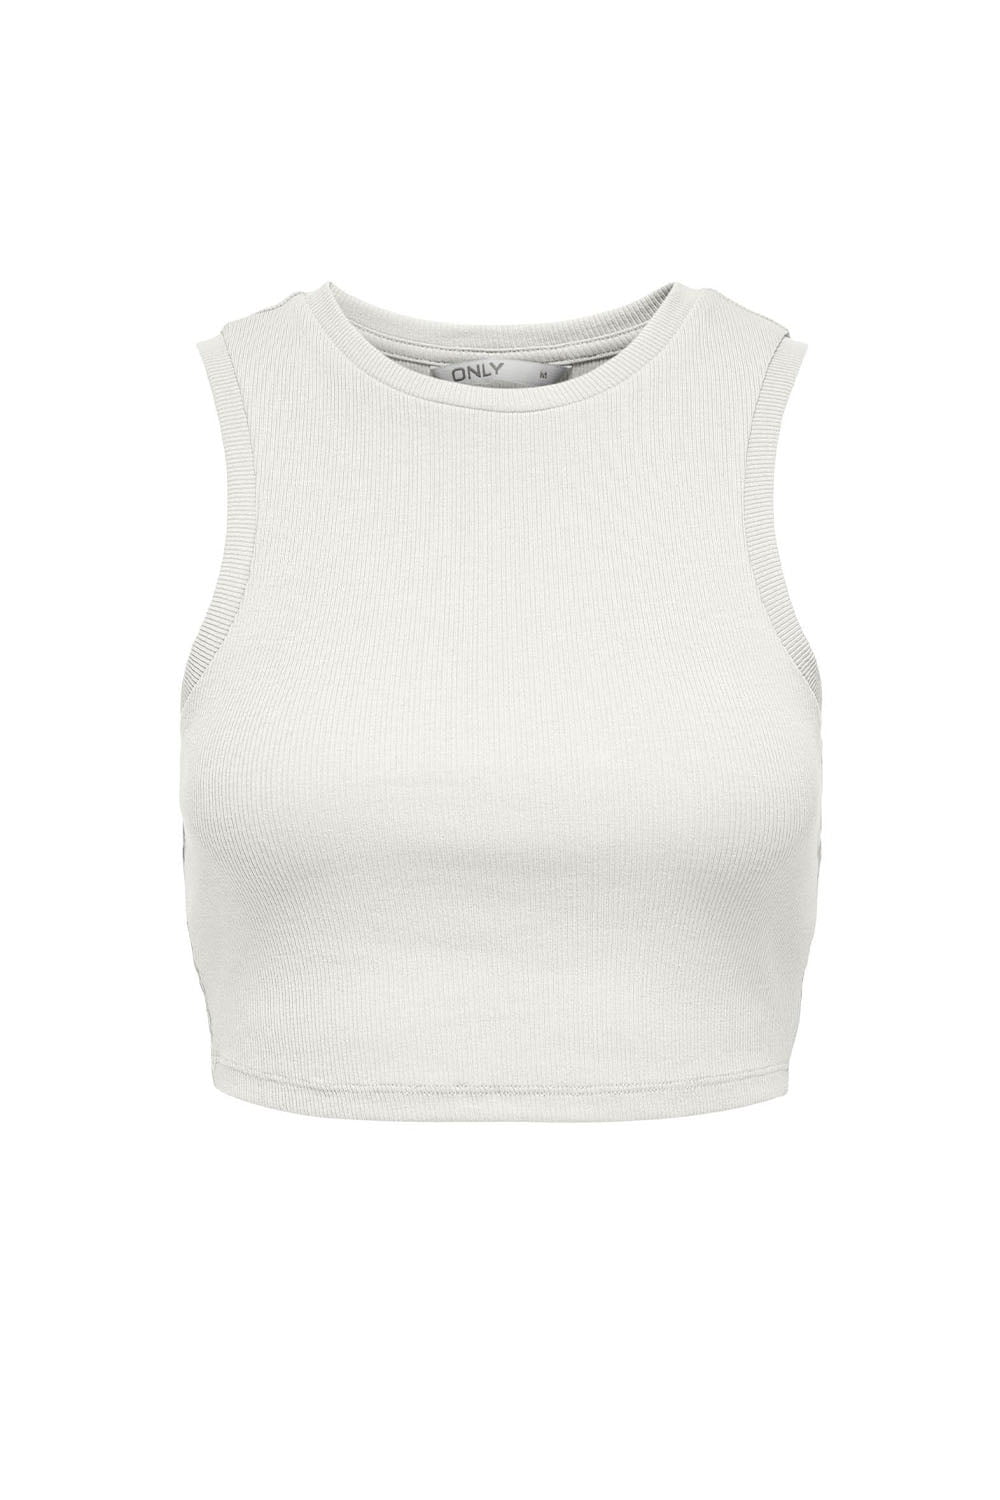 Γυναικεία Crop Top Αμάνικη Μπλούζα ONLY 15282771 Ασπρο